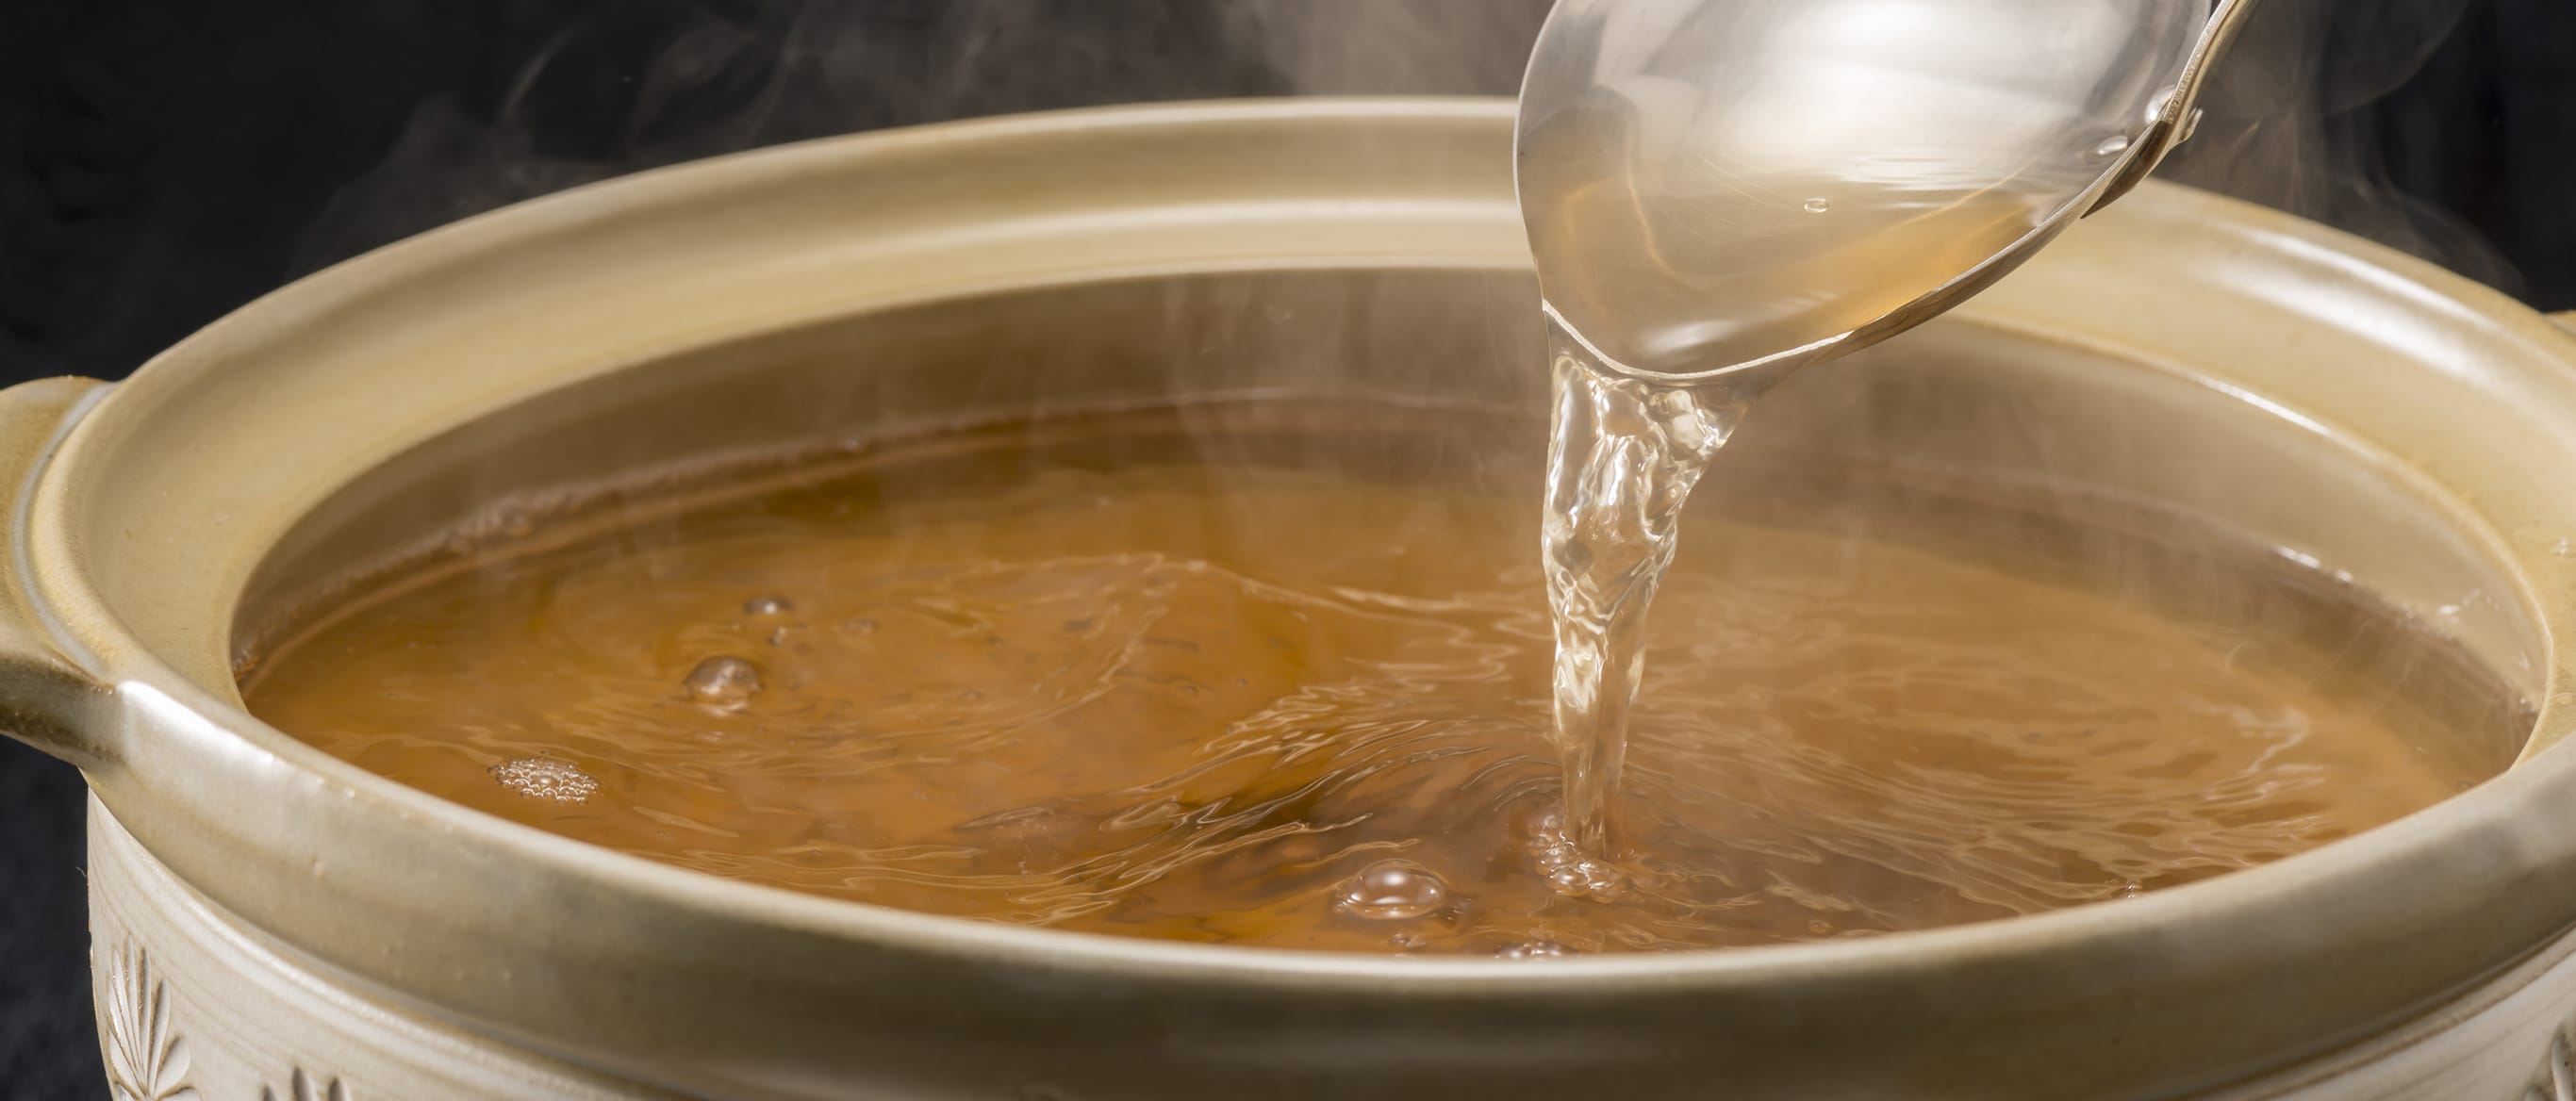 化学調味料を使用しない日本の伝統的なスープのイメージ画像が表示されています。